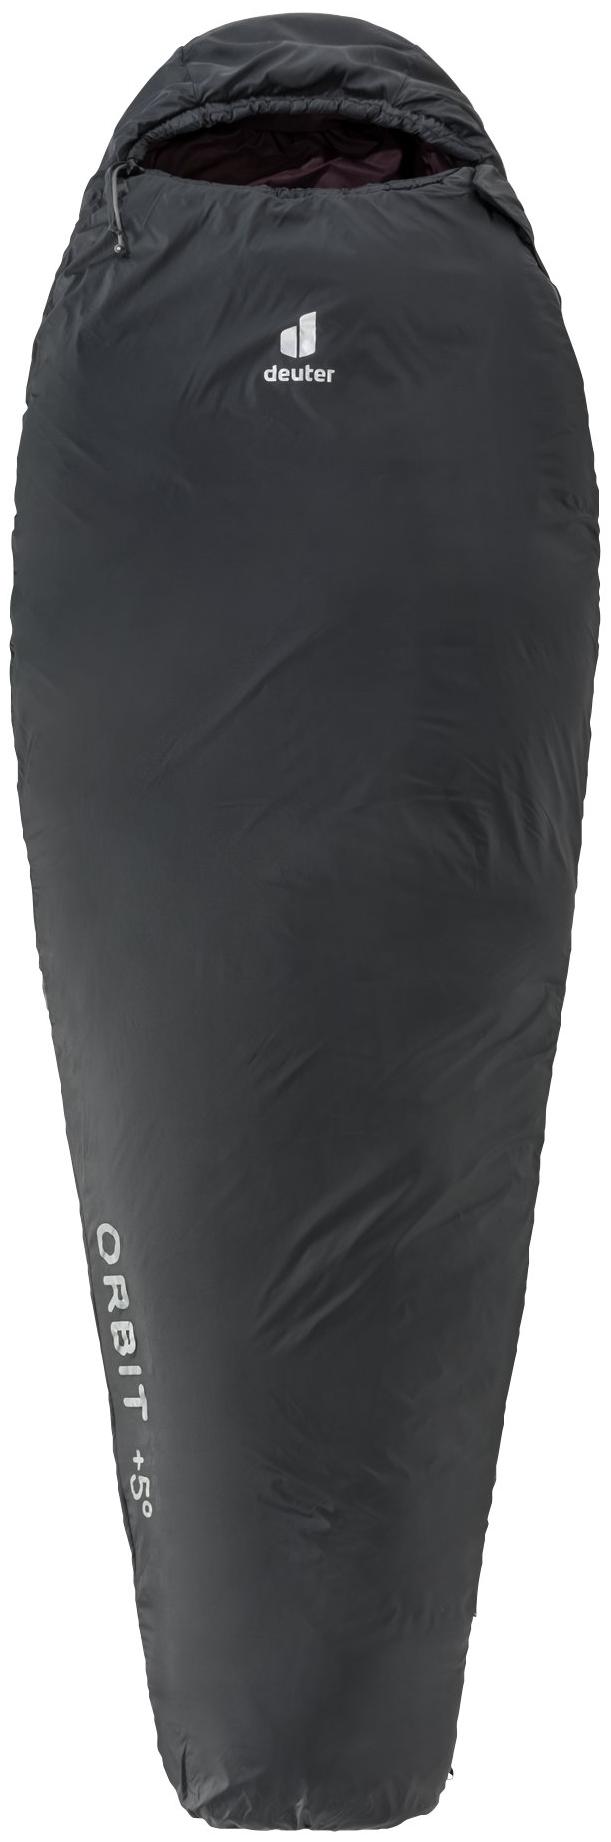 Спальный мешок Deuter Orbit +5° левый (Серый)